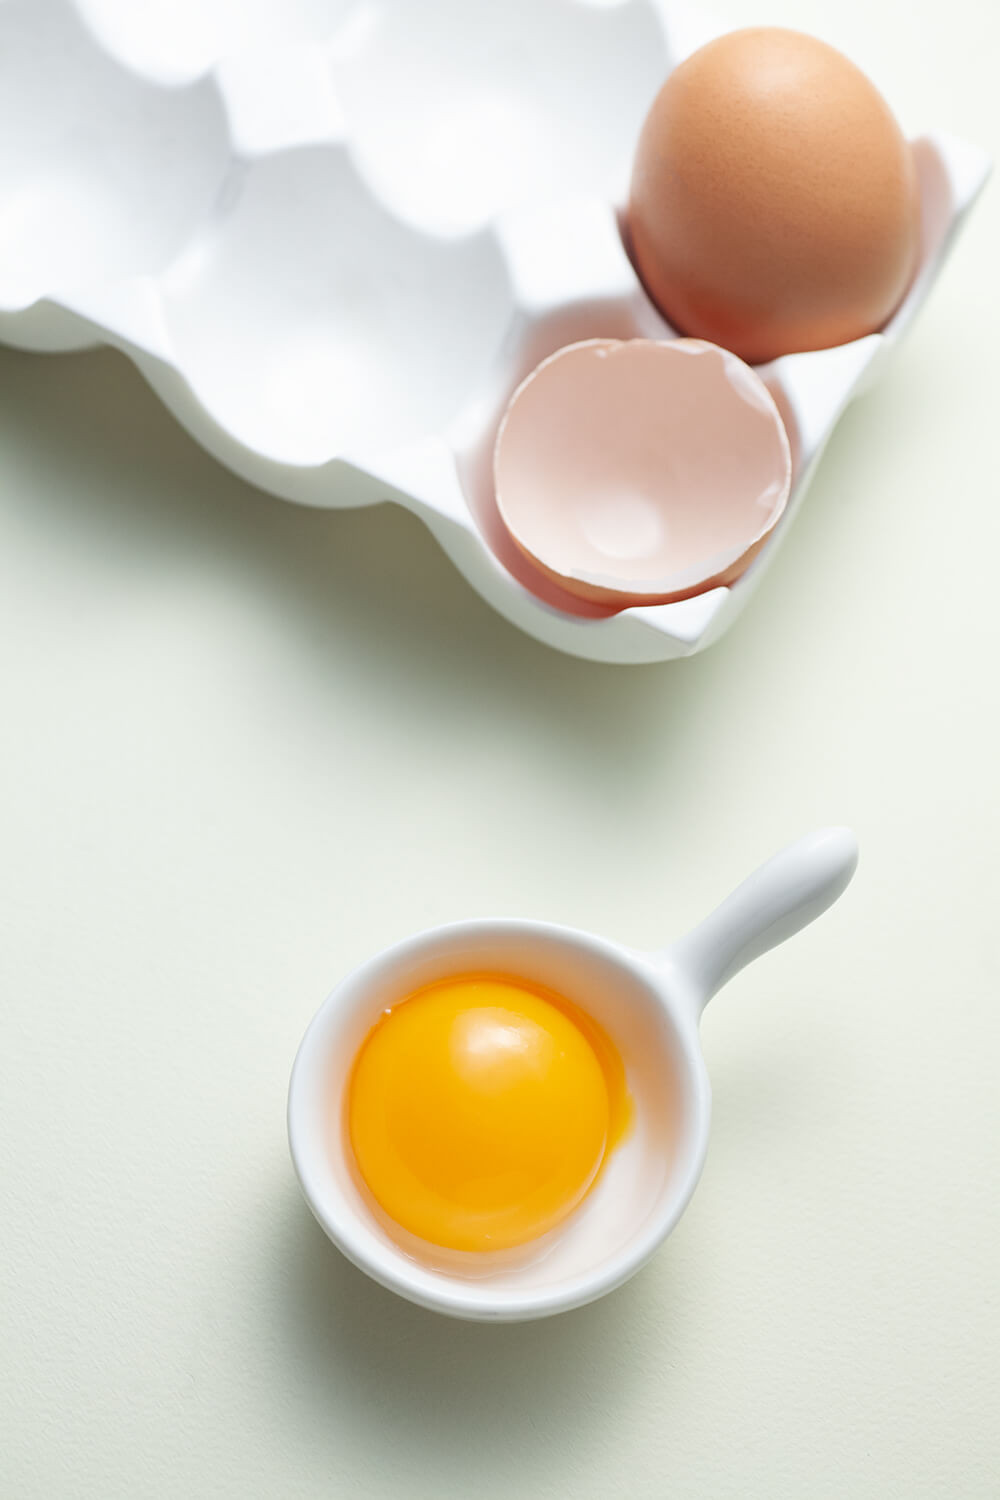 Żółtko jaja kurzego oddzielone od białka, w małej miseczce.